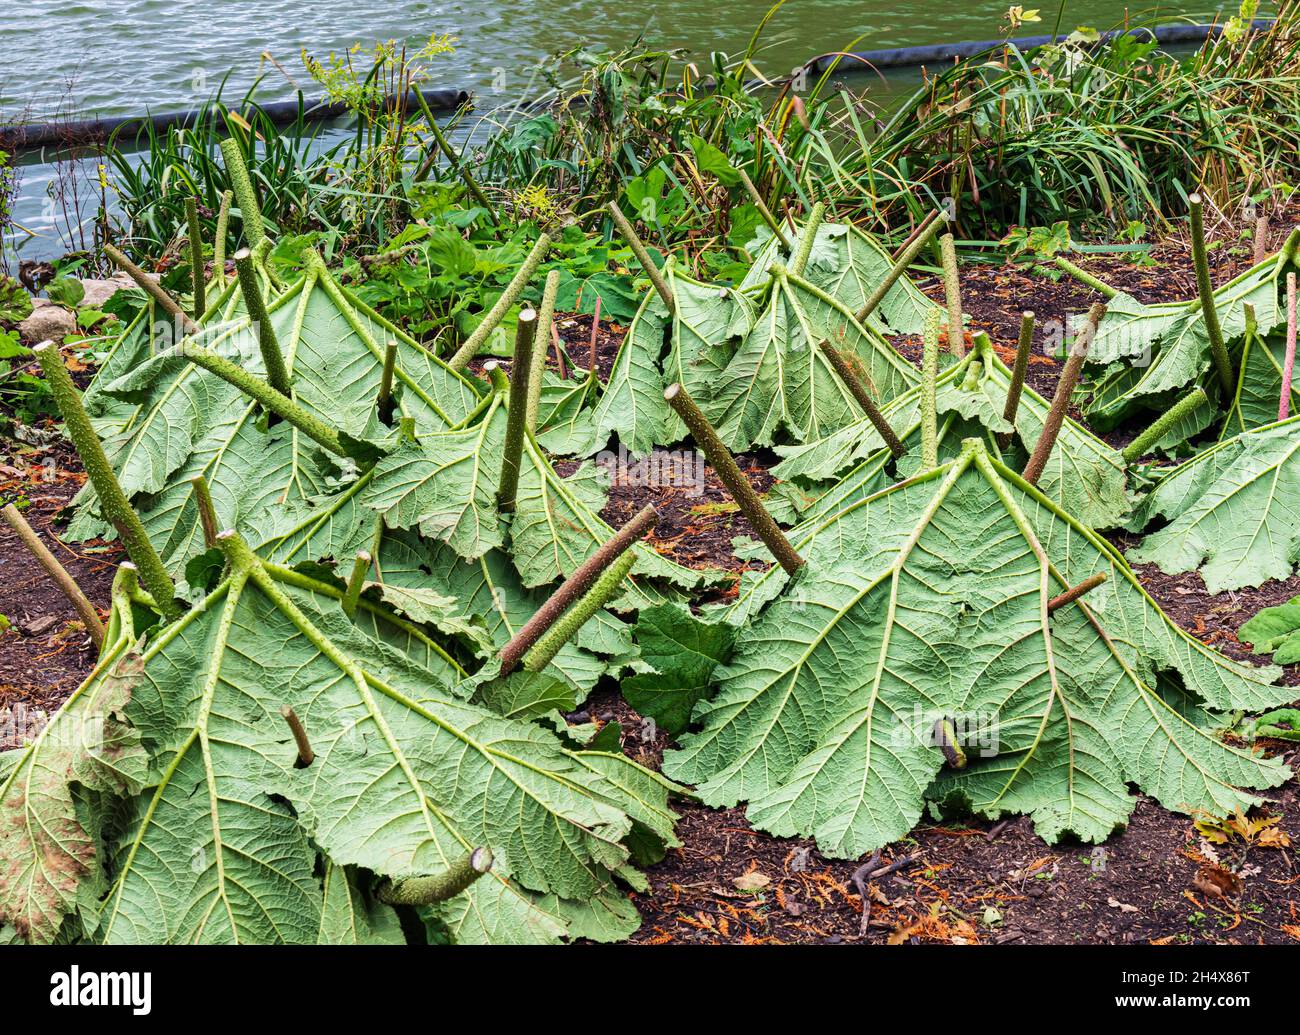 Gunnera Manicata, connue sous le nom de rhubarbe géante brésilienne. Avec feuilles retournées utilisées pour la protection contre le gel en hiver. Banque D'Images